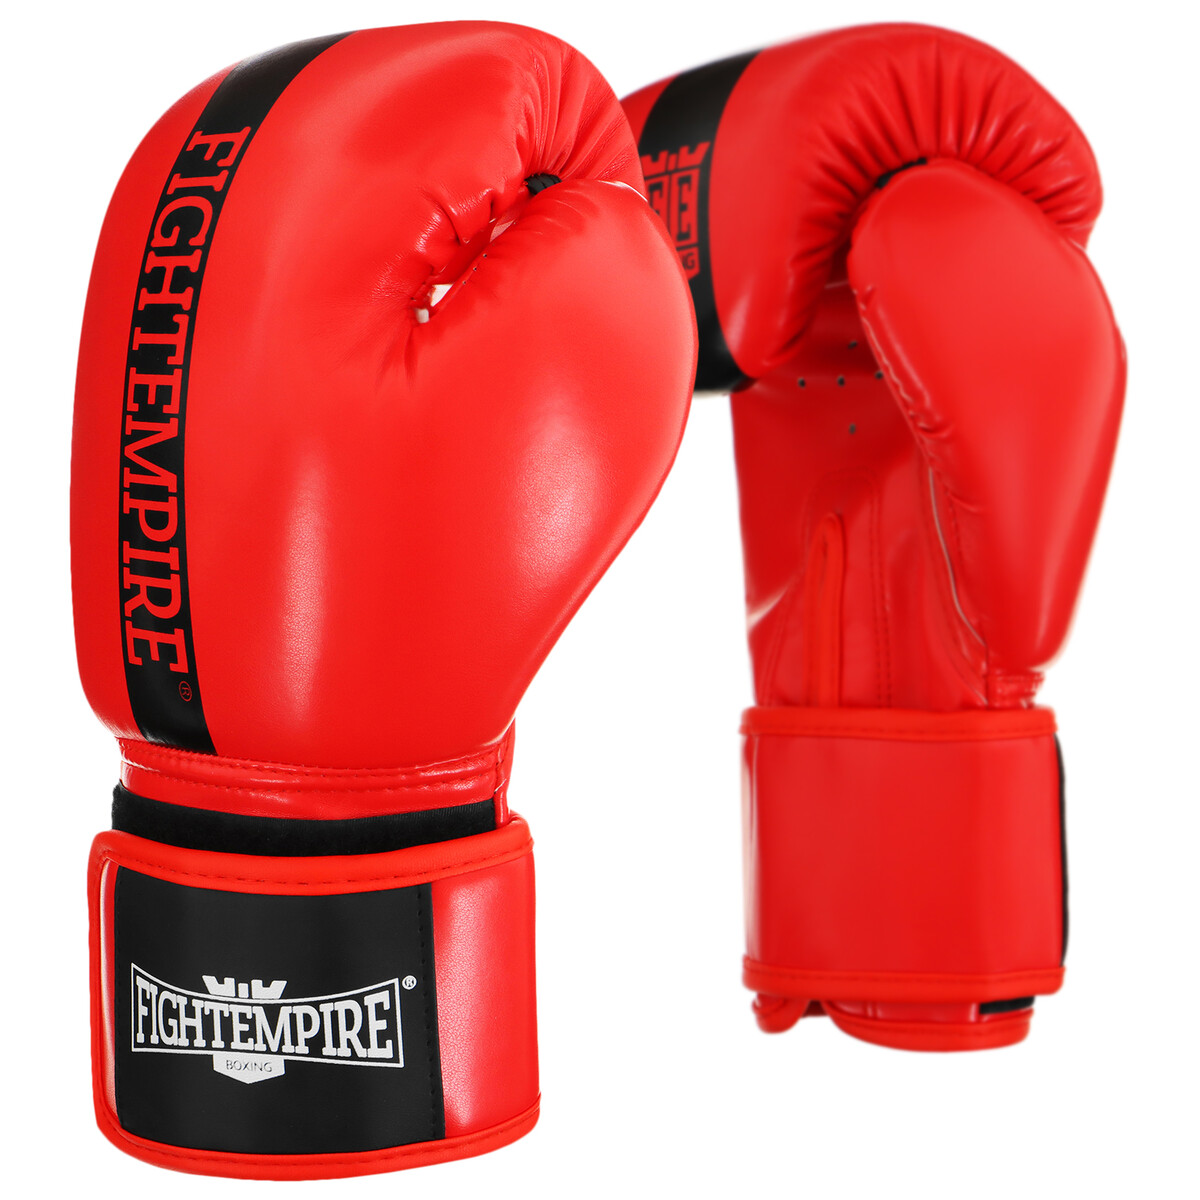 Перчатки боксерские fight empire, 10 унций, цвет красный перчатки боксерские 12 oz insane odin пу красный